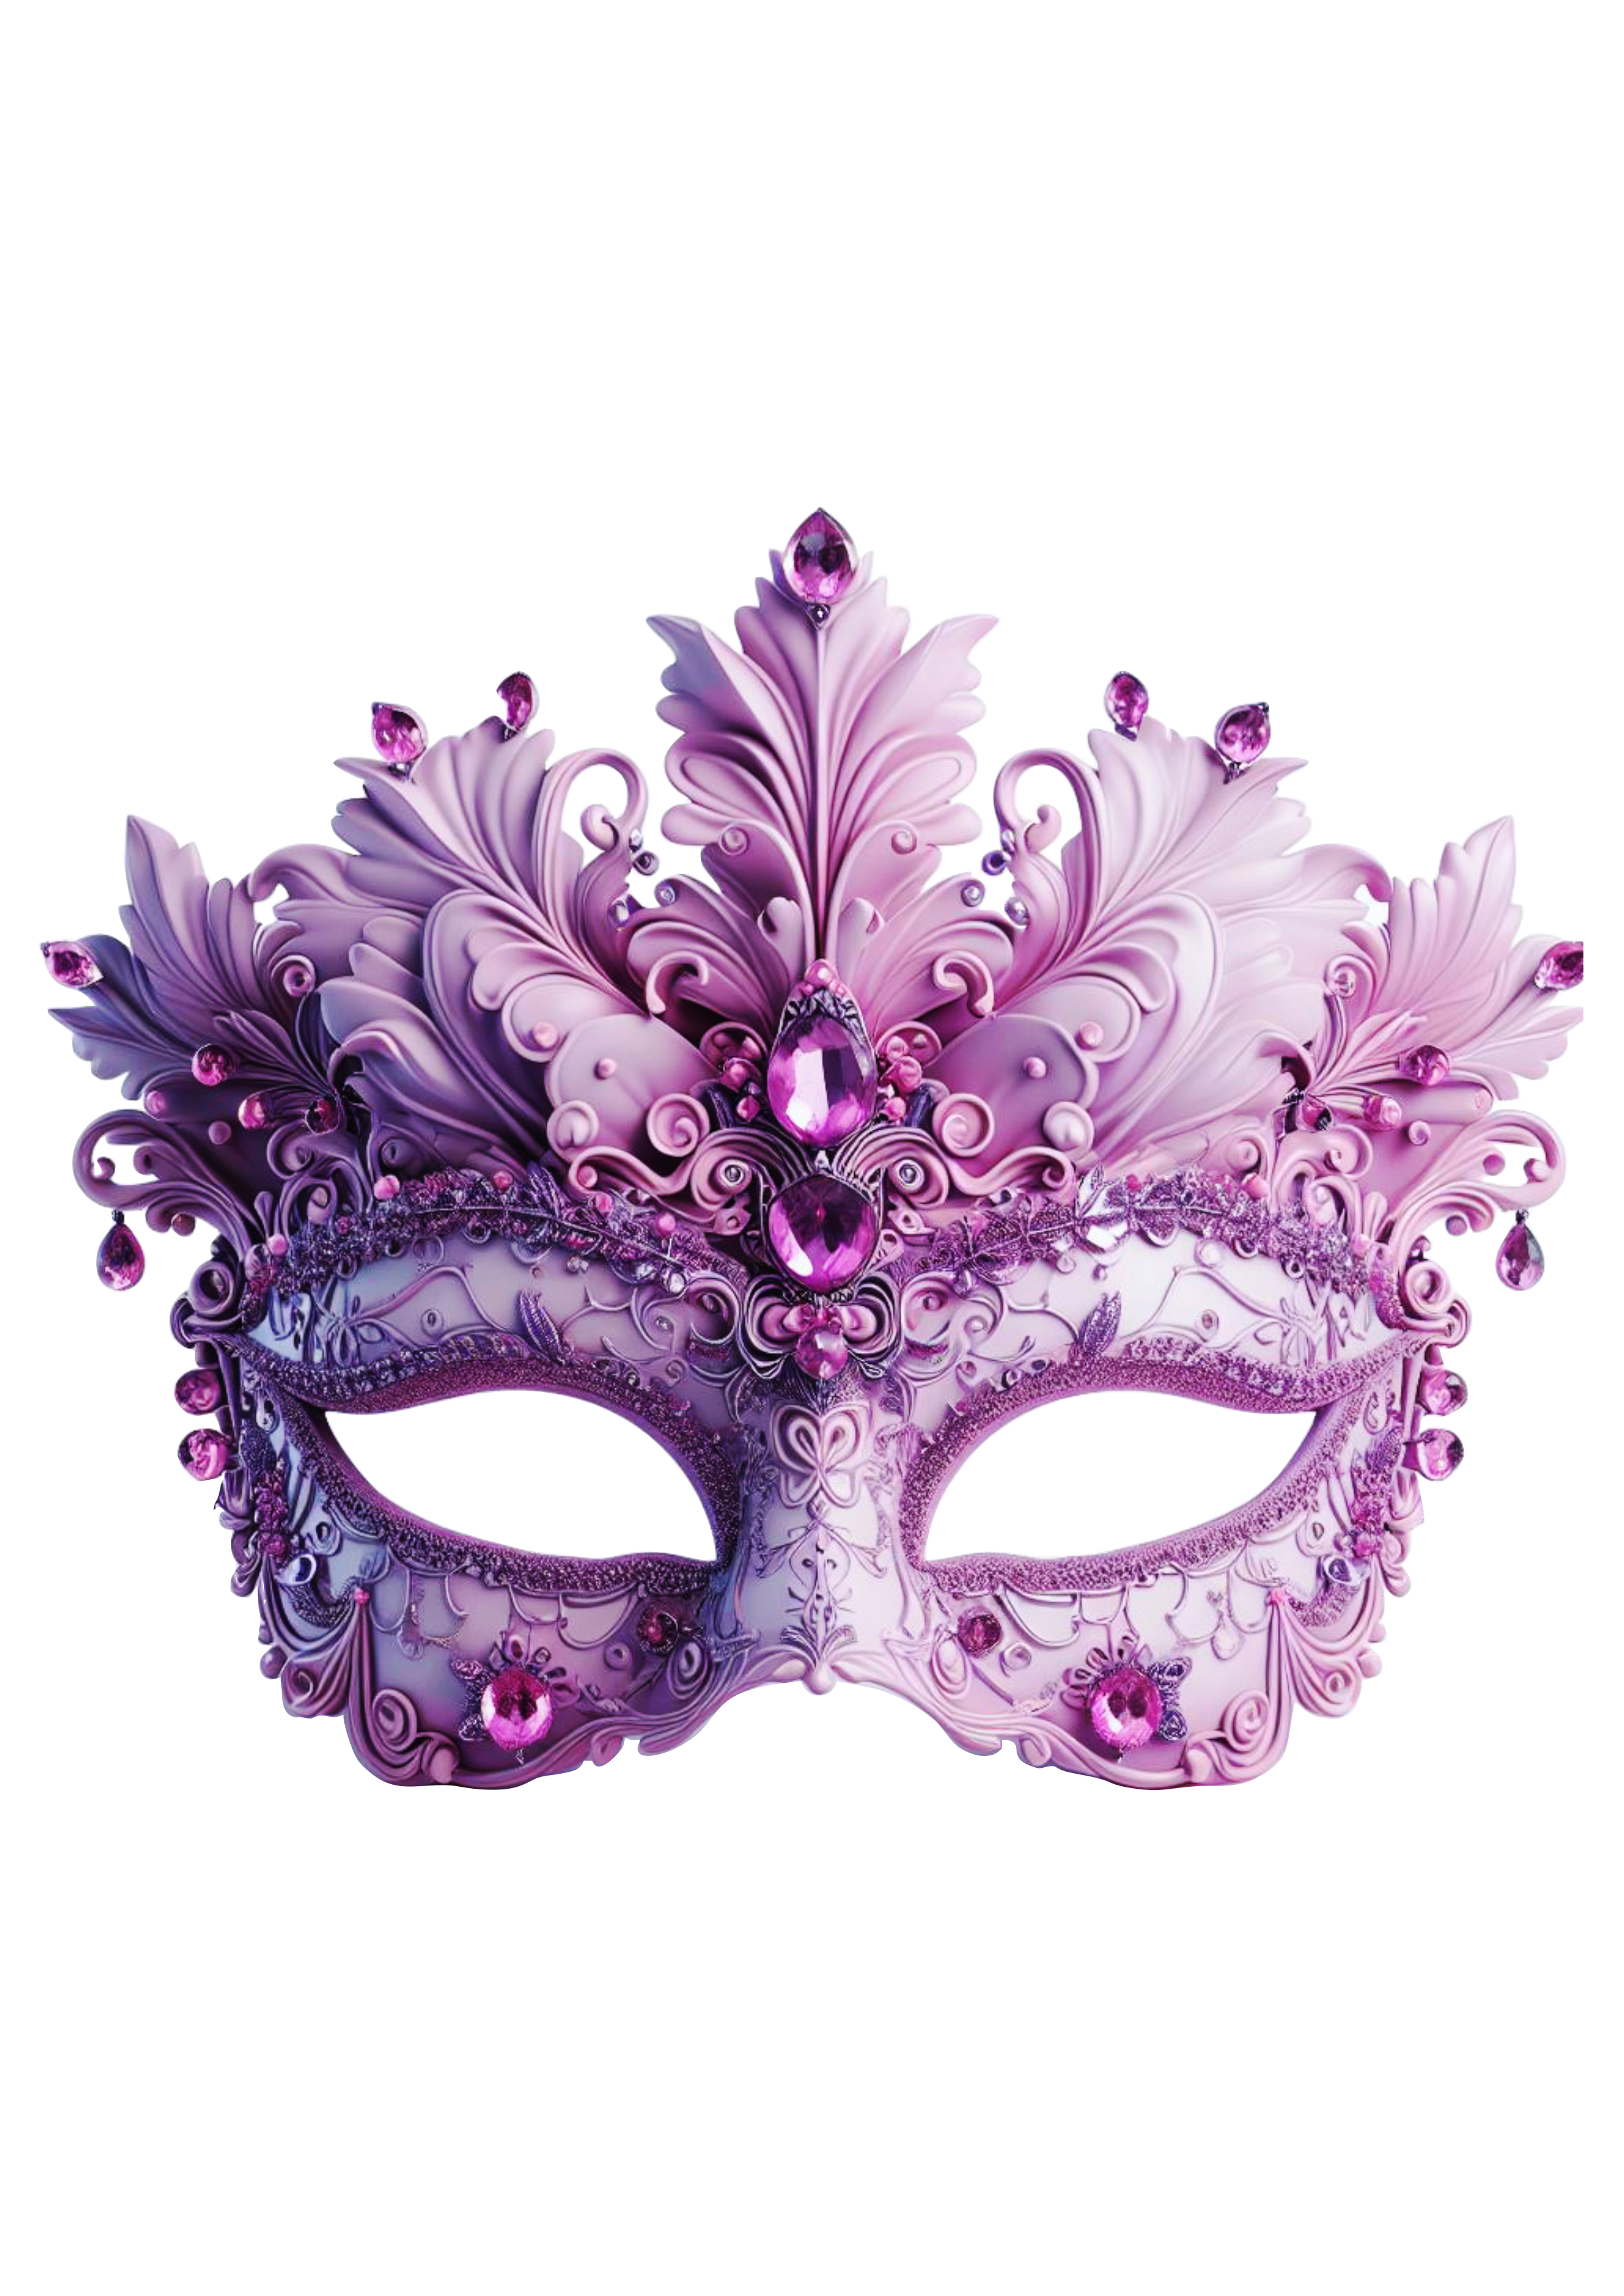 Máscara de carnaval brilhante joias baile de máscaras png image lilás